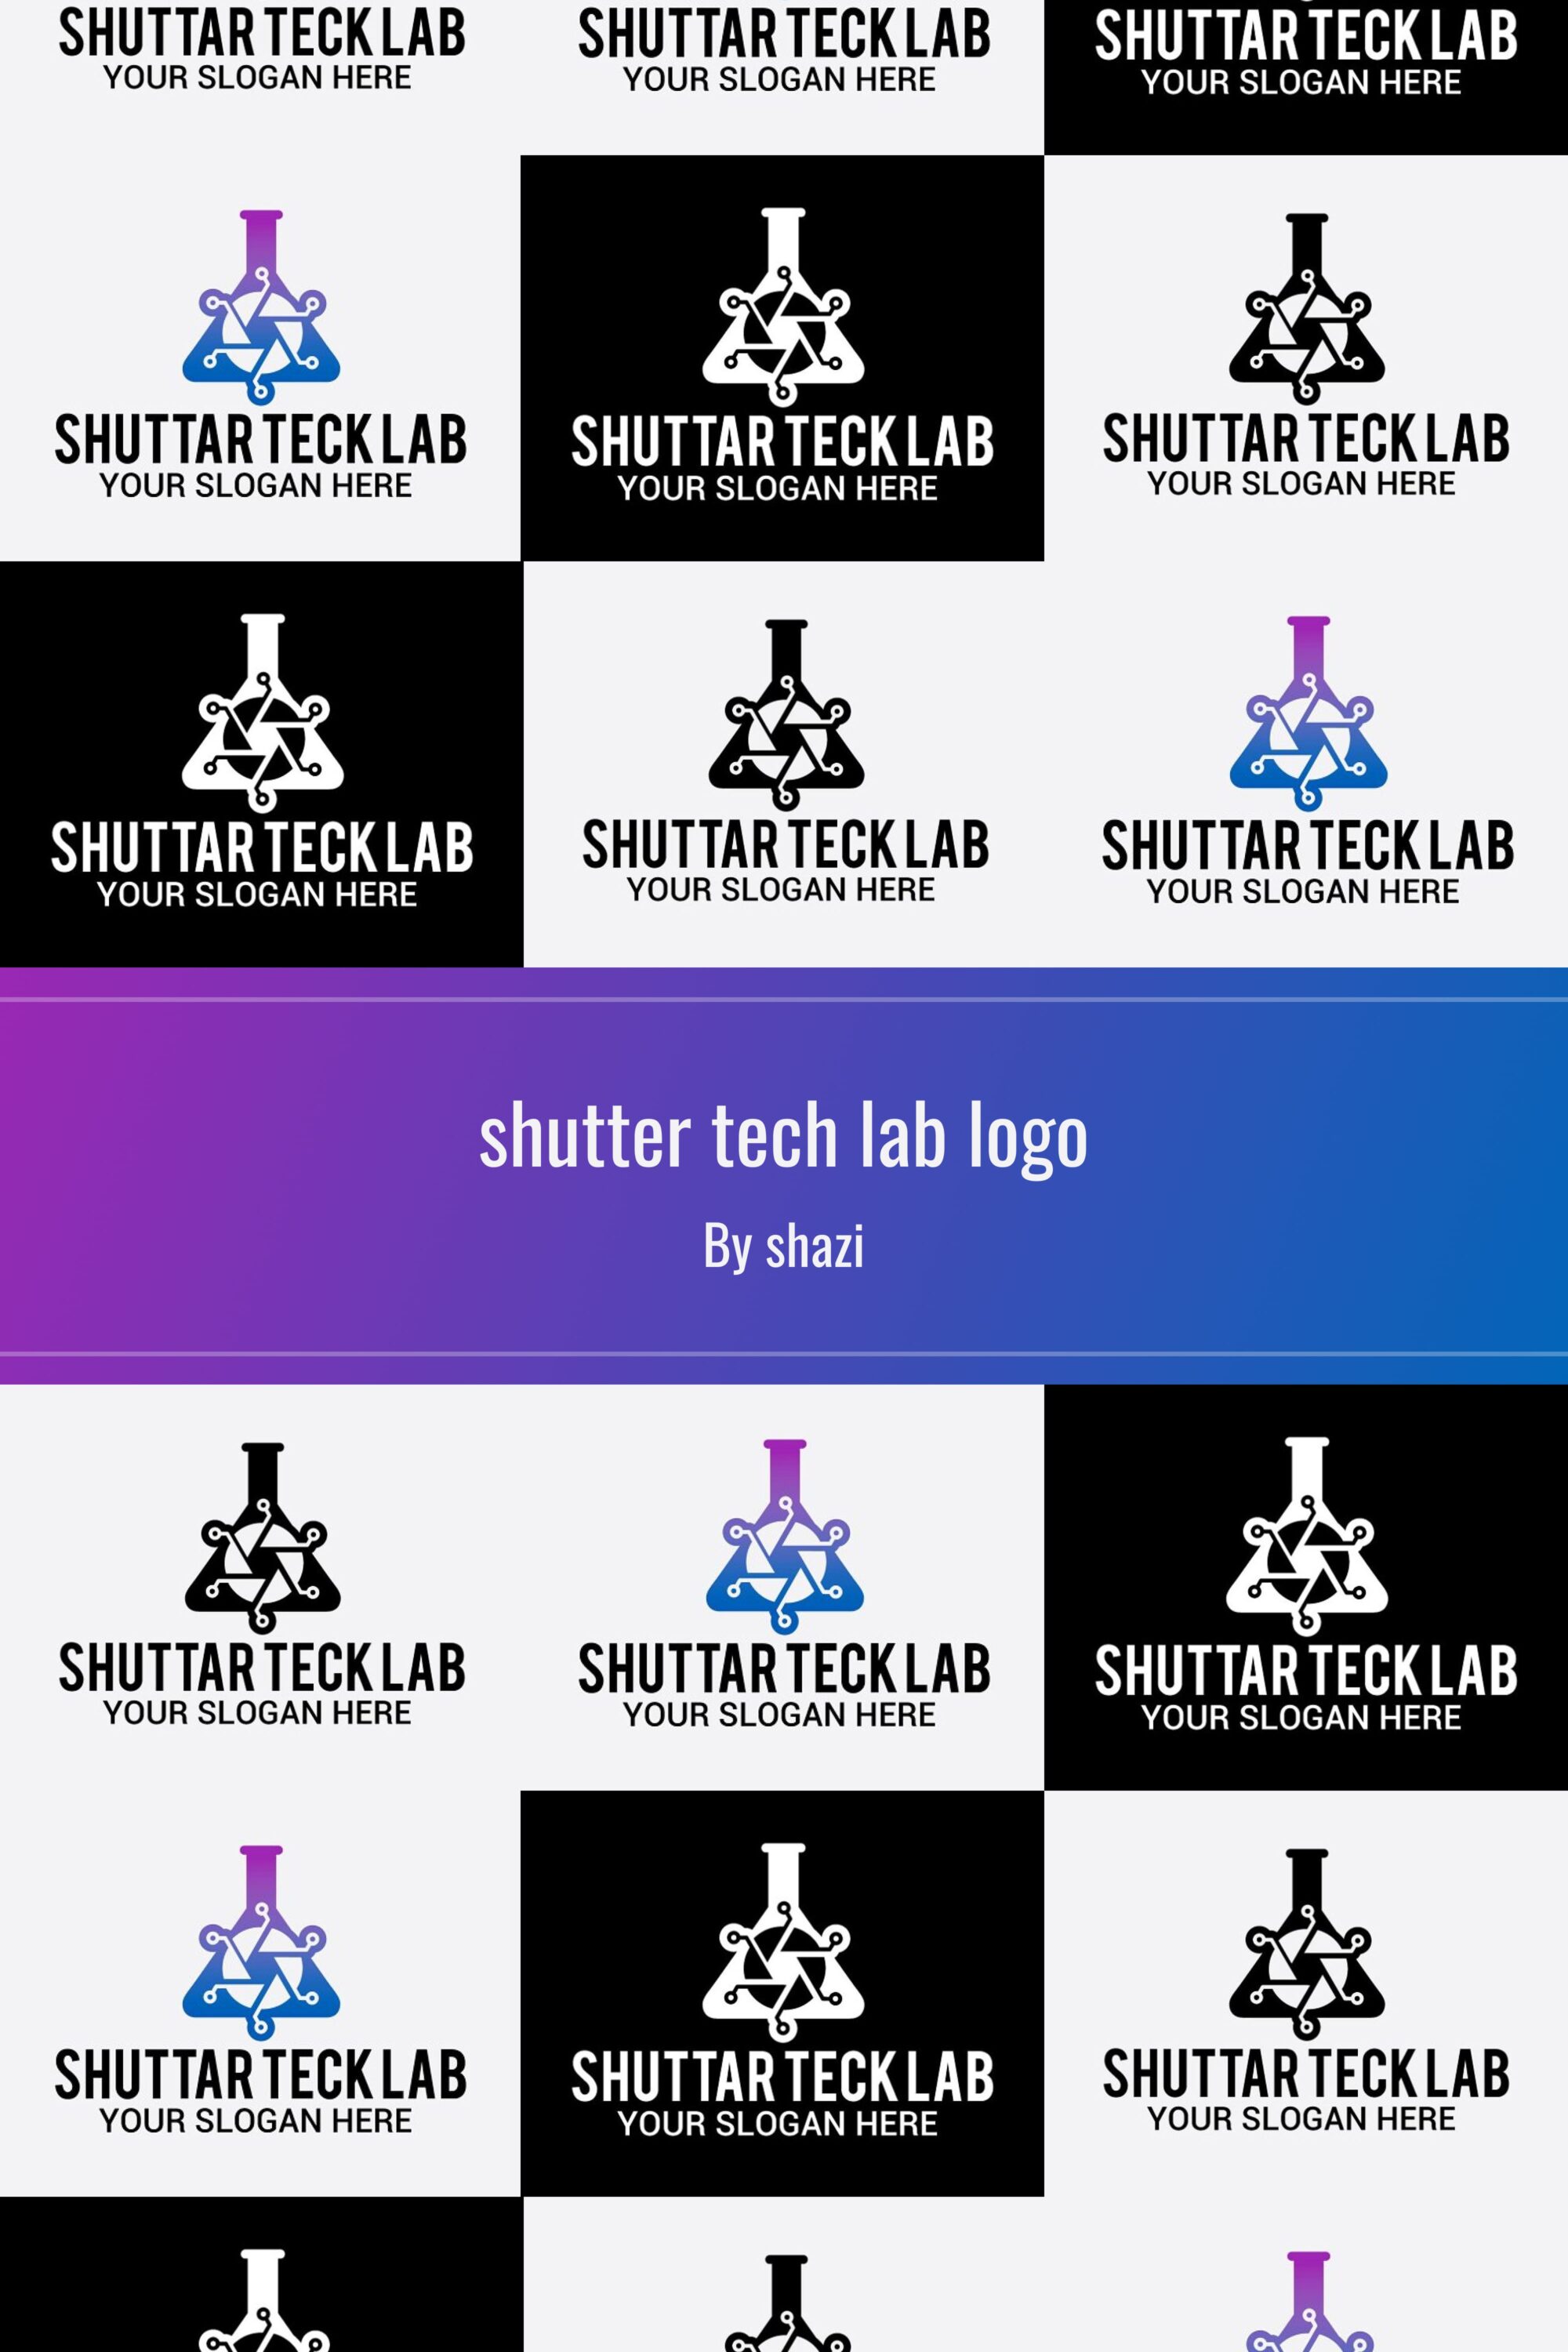 shutter tech lab logo 03 445